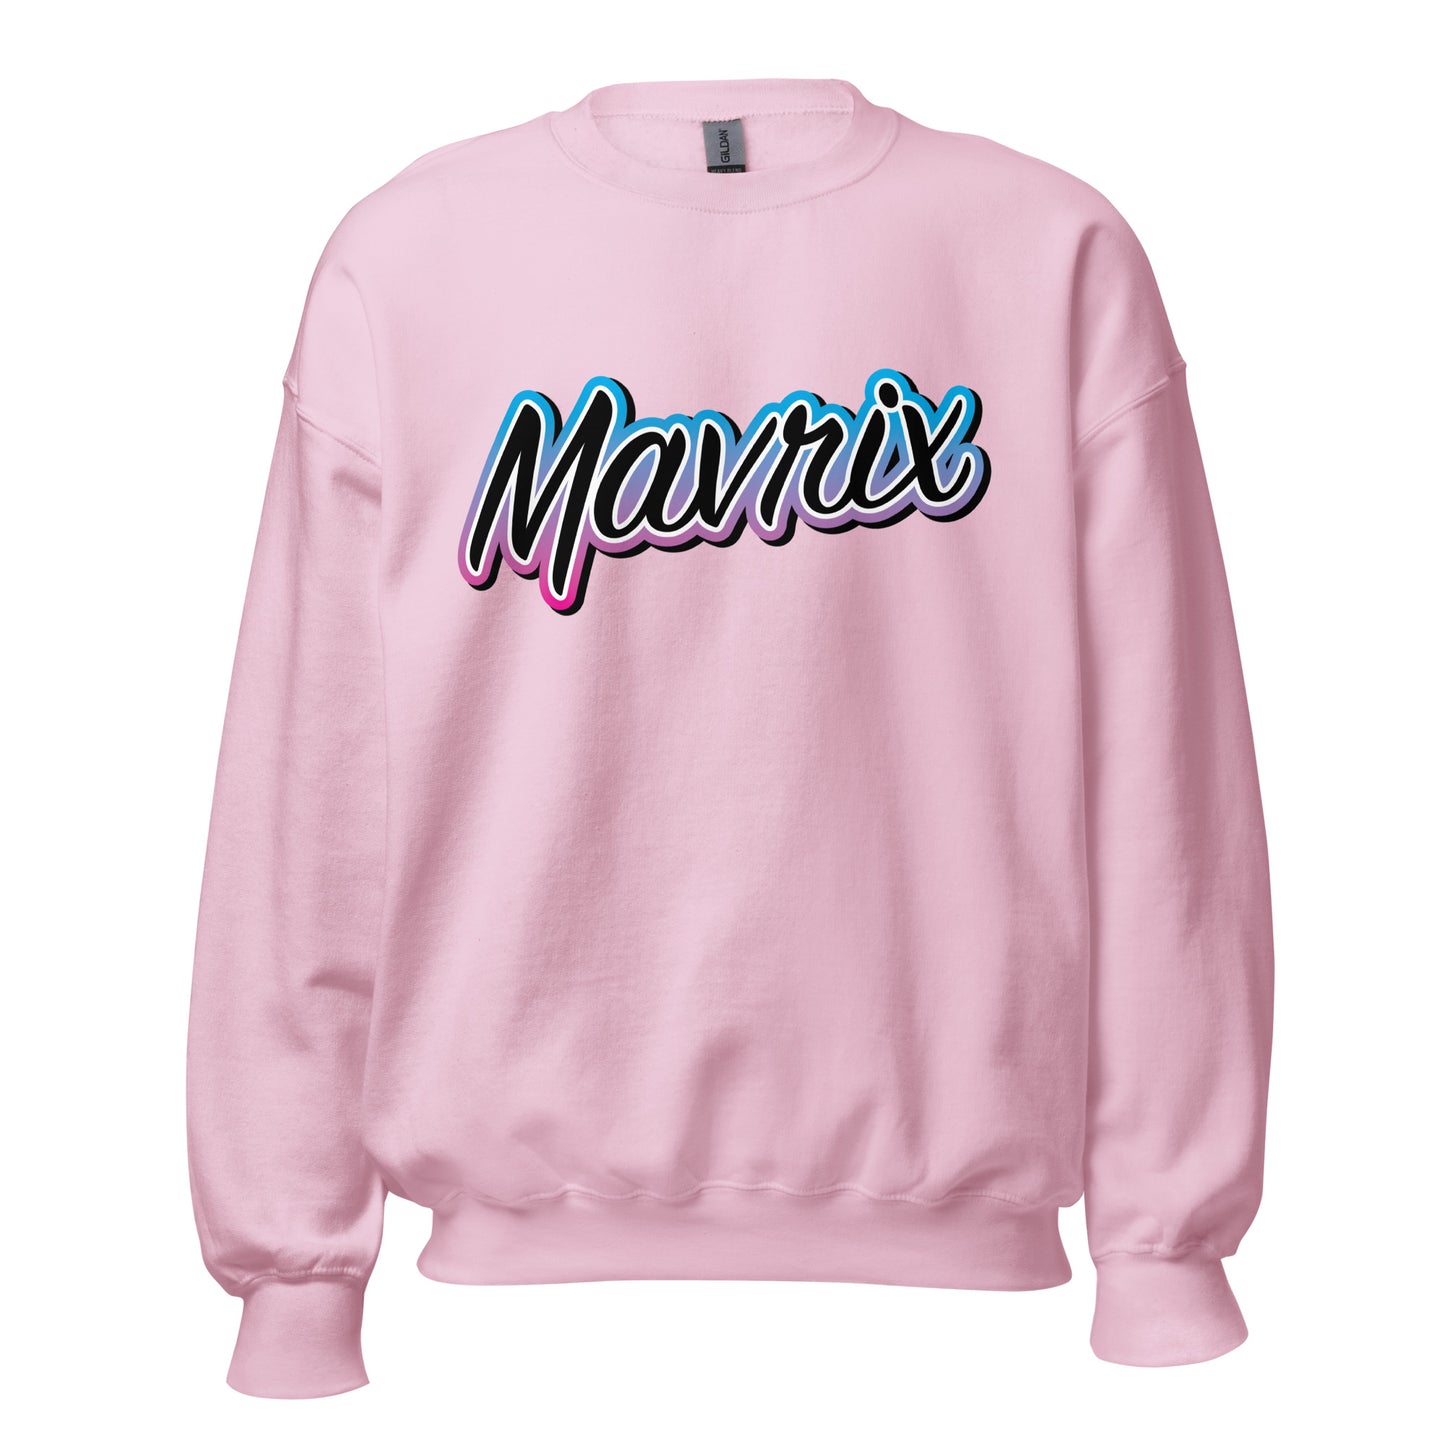 Mavrix Gradient Sweatshirt (6 colors)